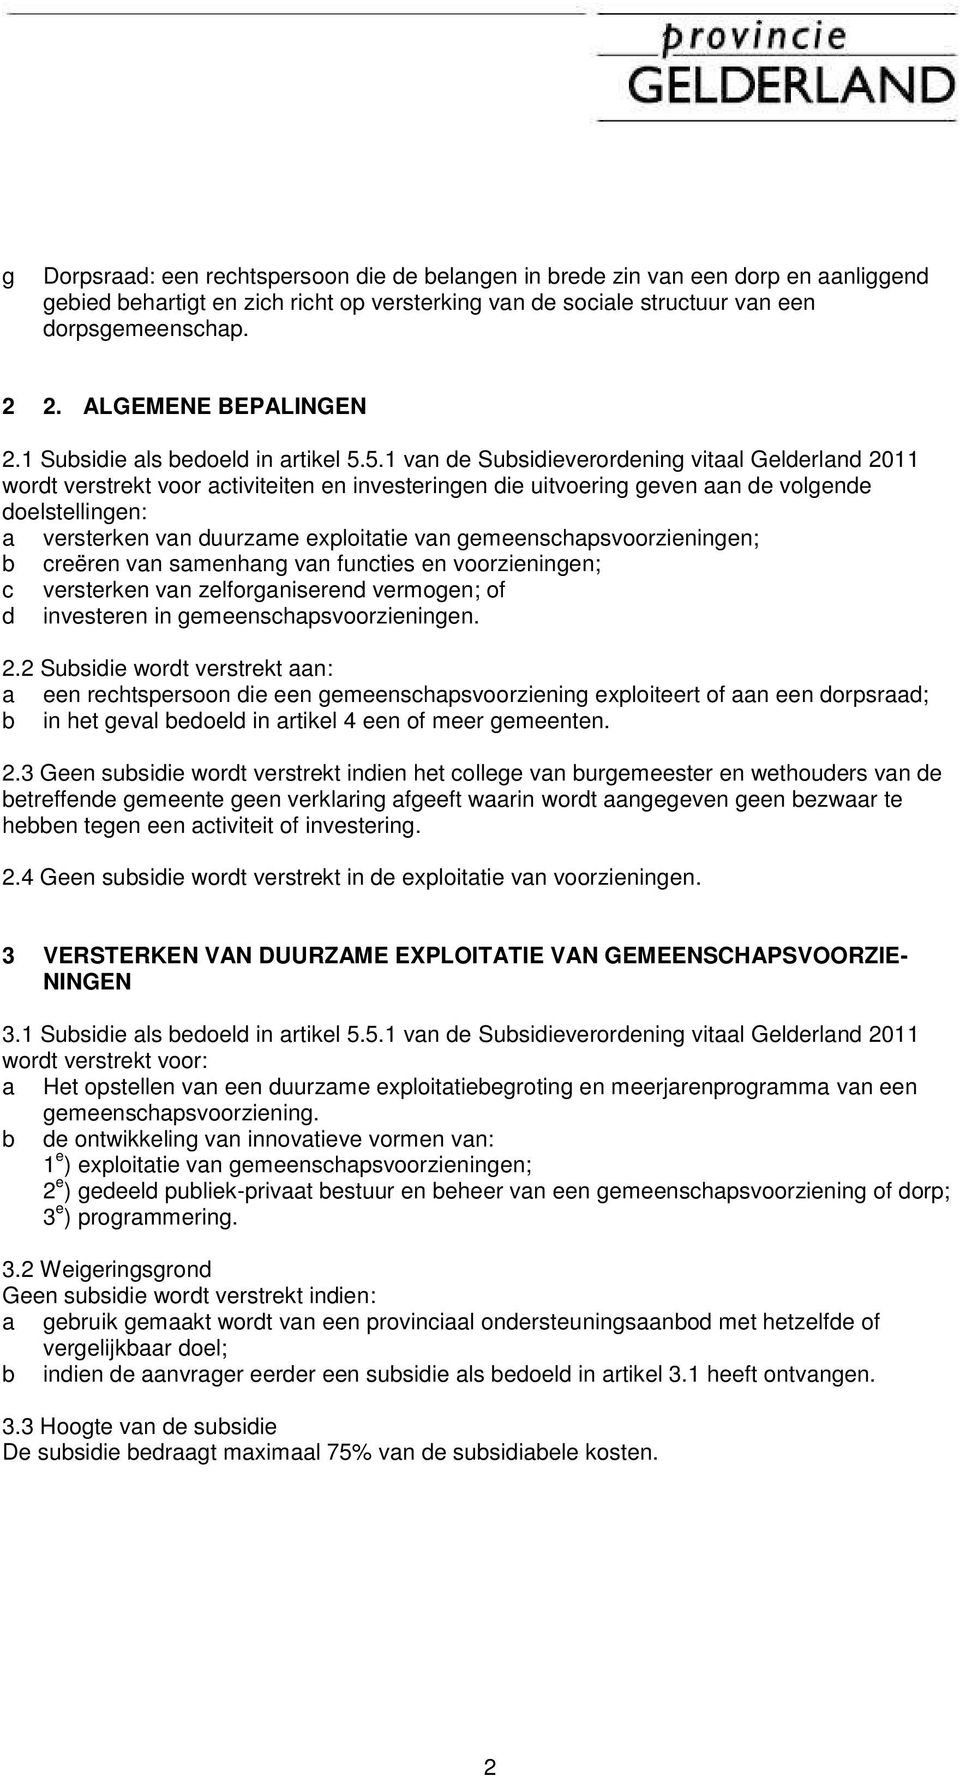 5.1 van de Subsidieverordening vitaal Gelderland 2011 wordt verstrekt voor activiteiten en investeringen die uitvoering geven aan de volgende doelstellingen: a versterken van duurzame exploitatie van